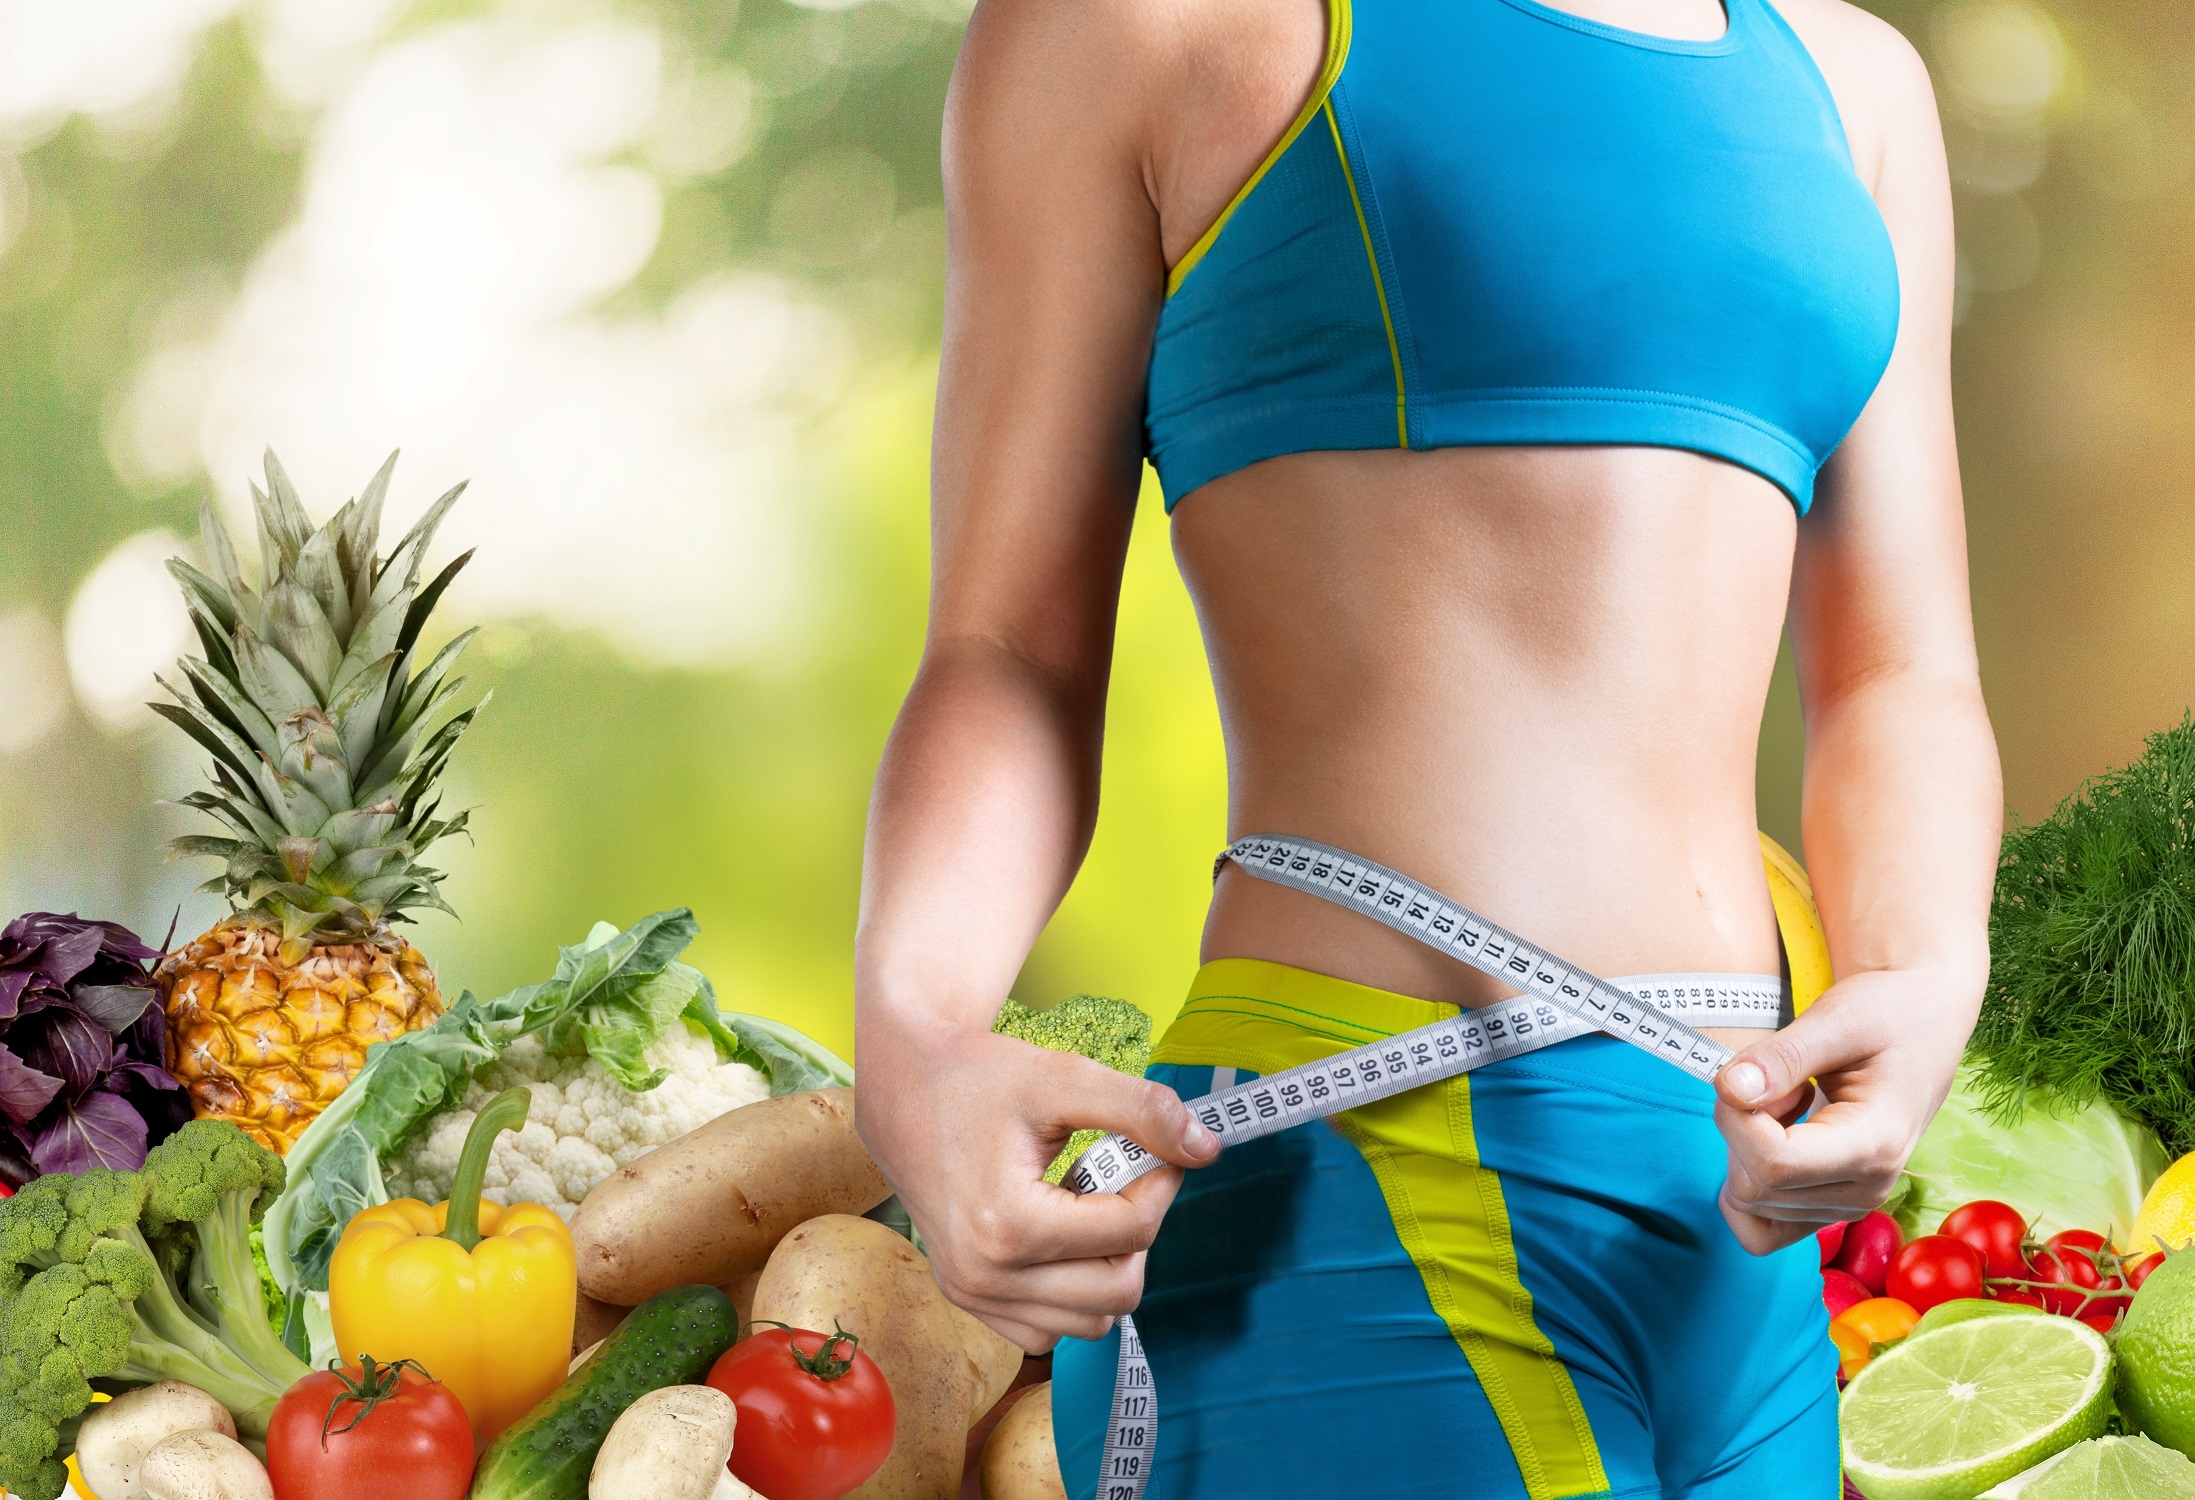 Diet way. Стройность. Здоровое питание и фитнес. Для похудения. Правильное питание и спорт.